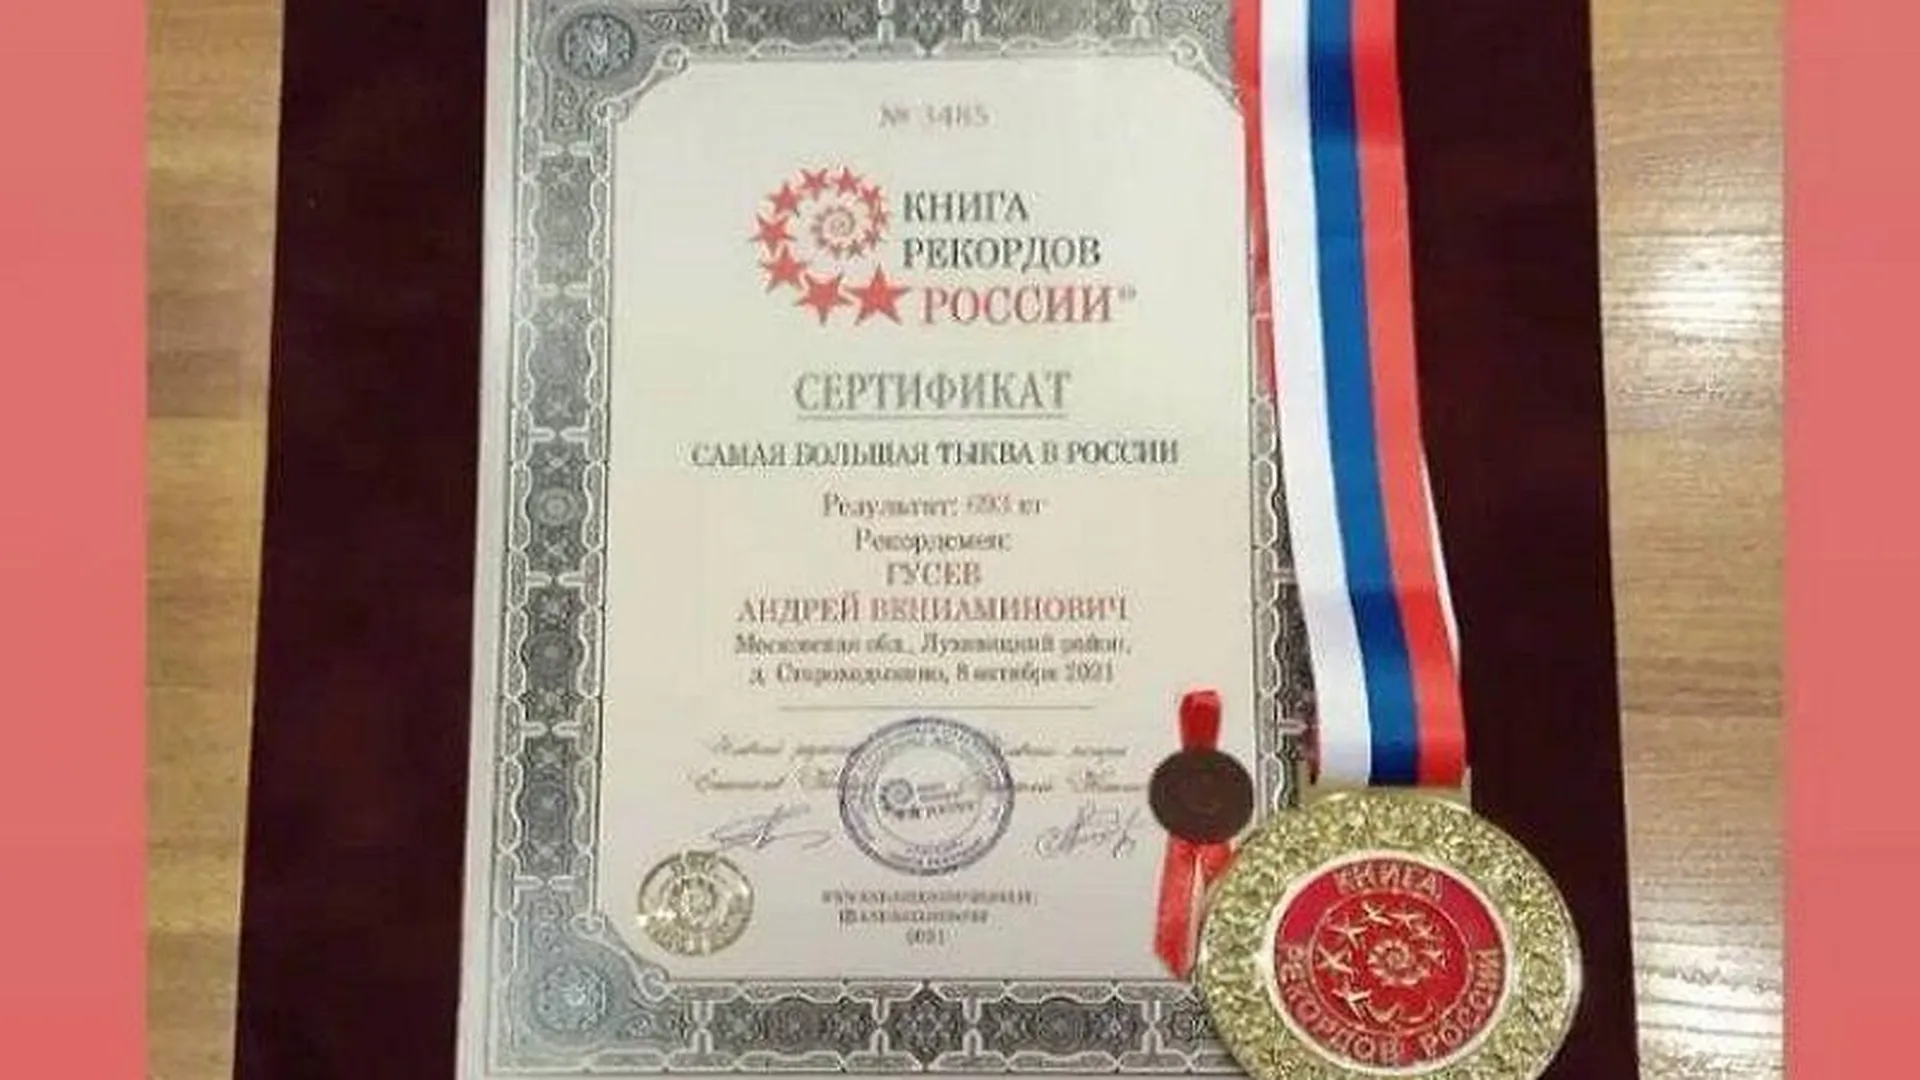 Фермер из Луховиц, вырастивший самую большую тыкву, получил медаль книги рекордов России